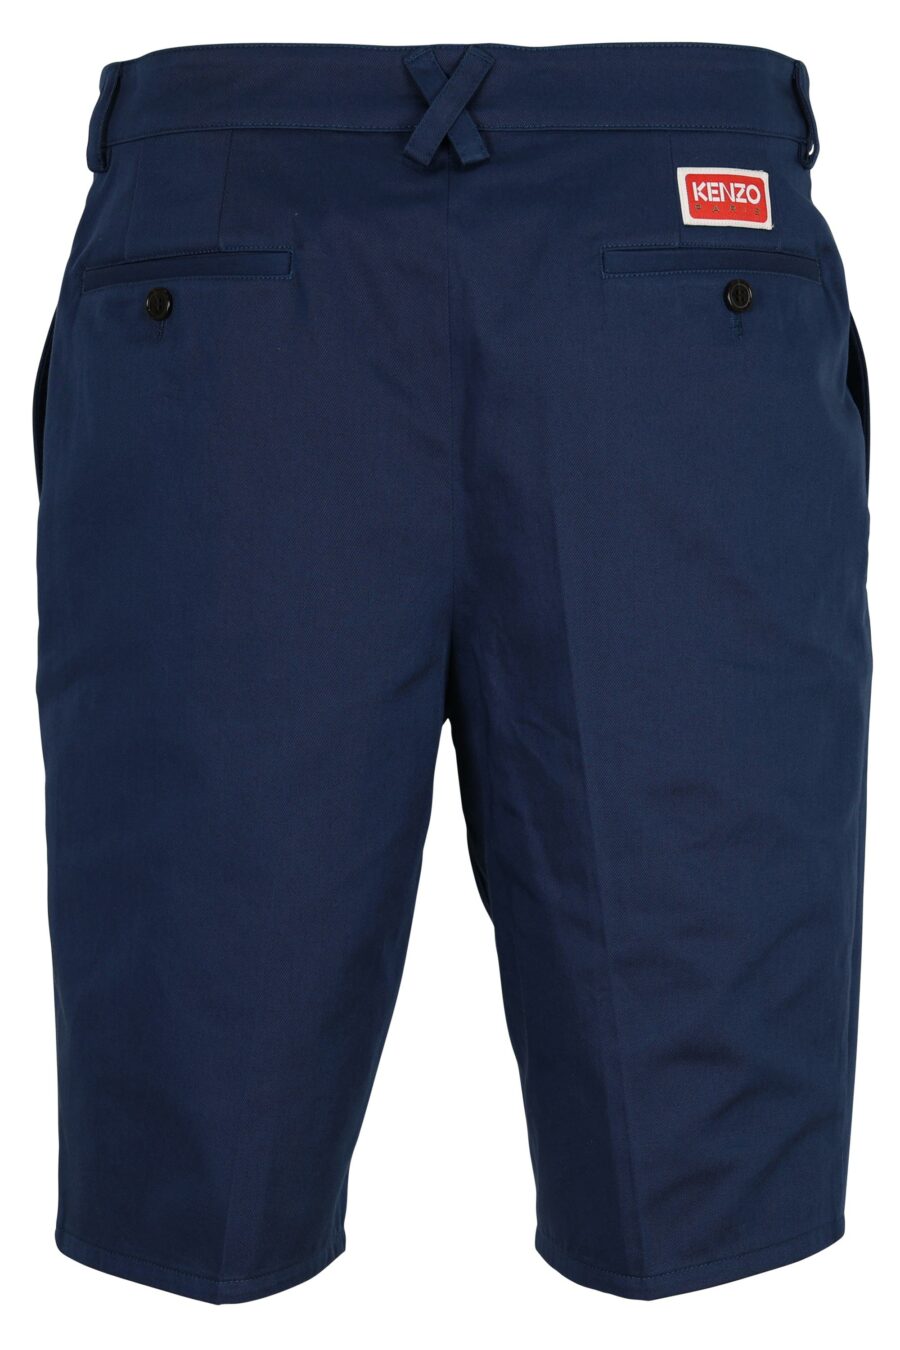 Pantalón azul oscuro corto con minilogo "boke flower" blanco - 3612230638433 1